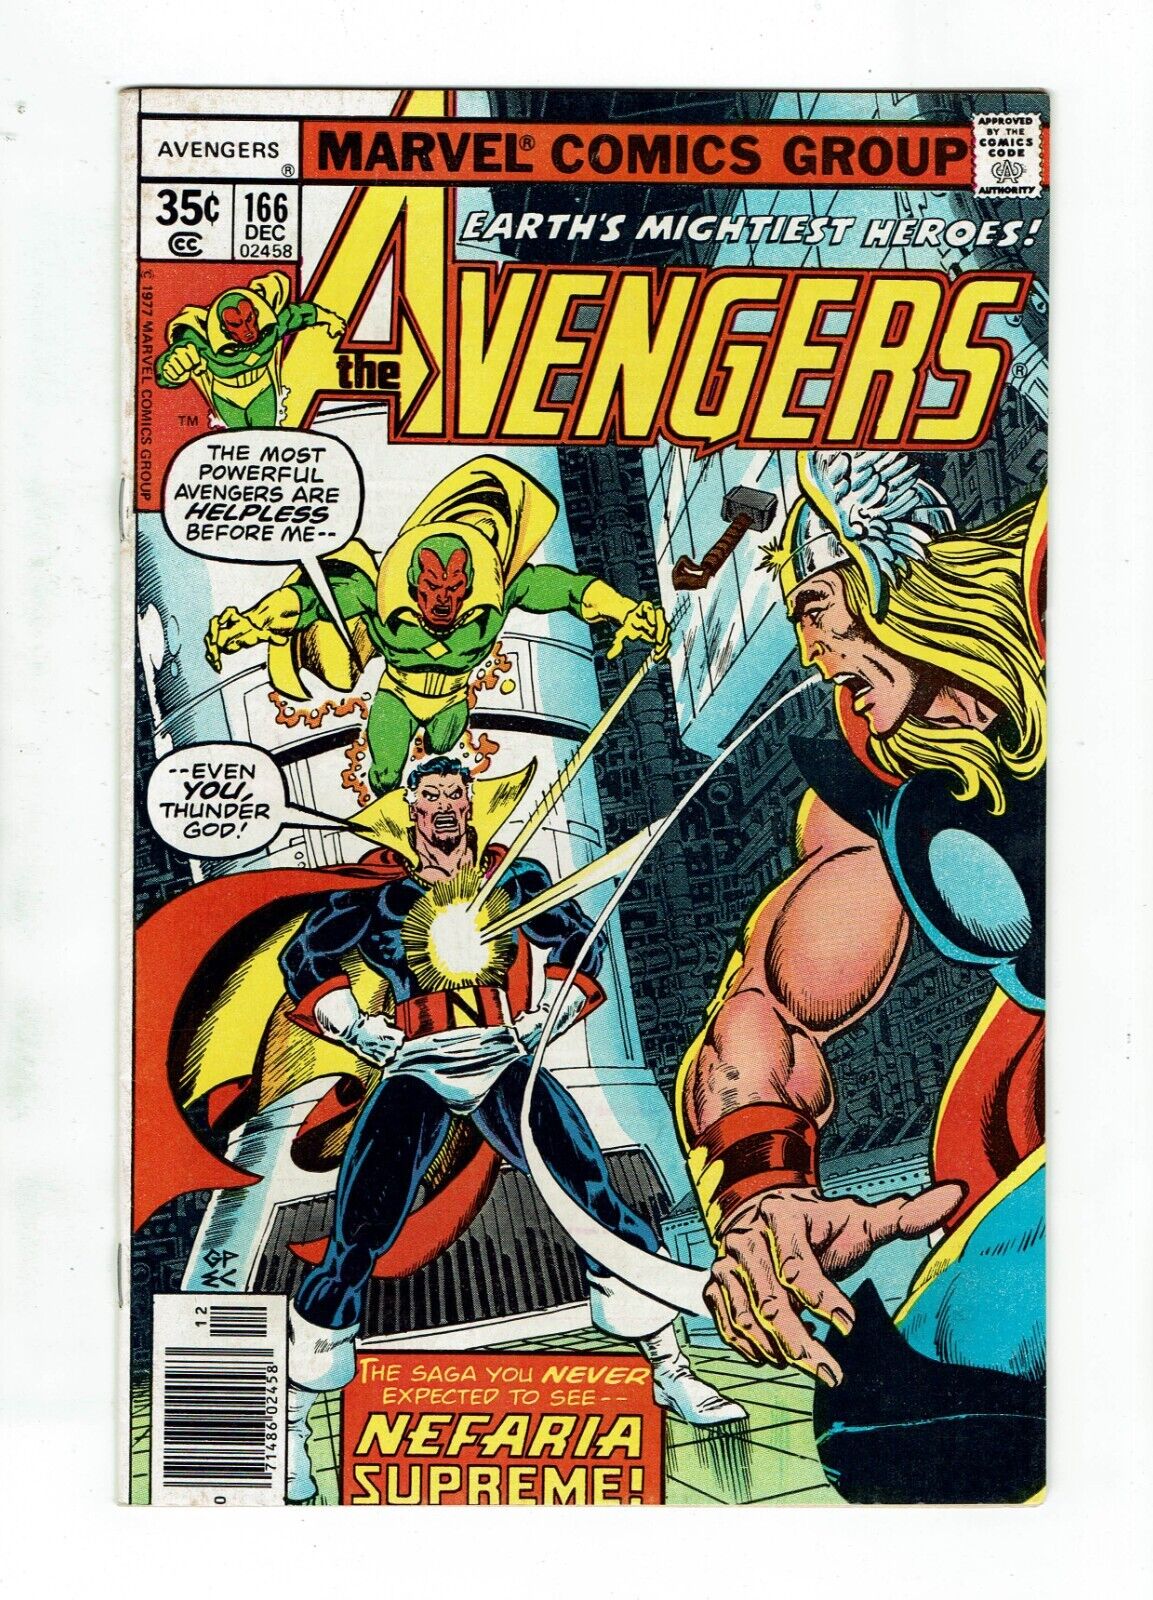 Marvel Comics Key - Avengers 166 - Wonder Man Joins the Avengers